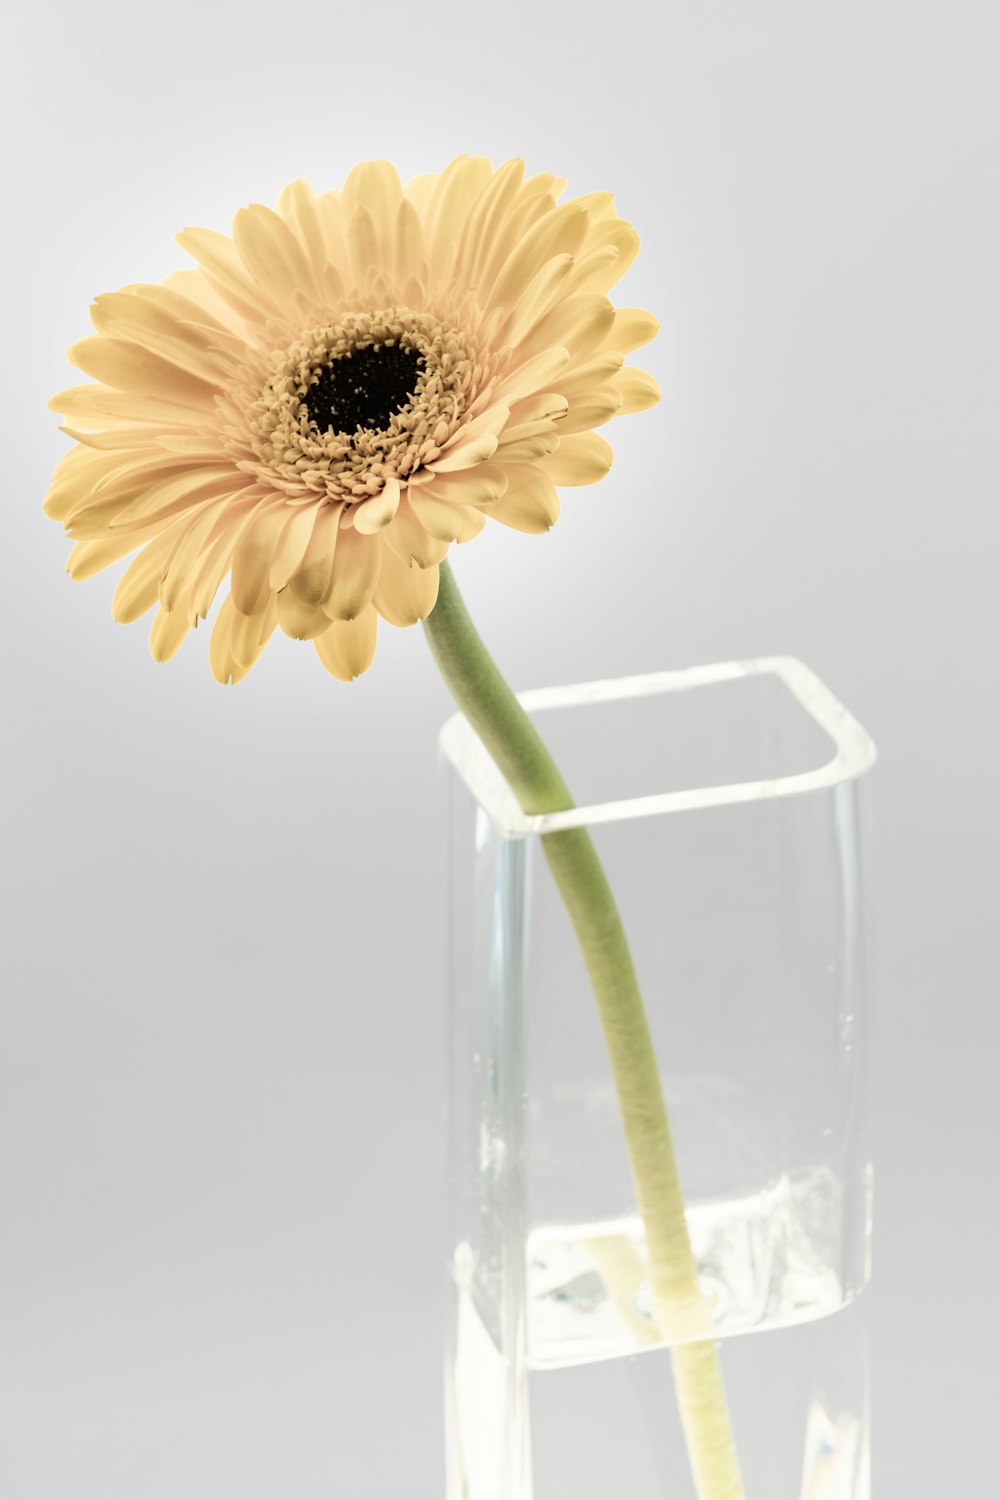 Tournesol jaune dans un vase en verre transparent